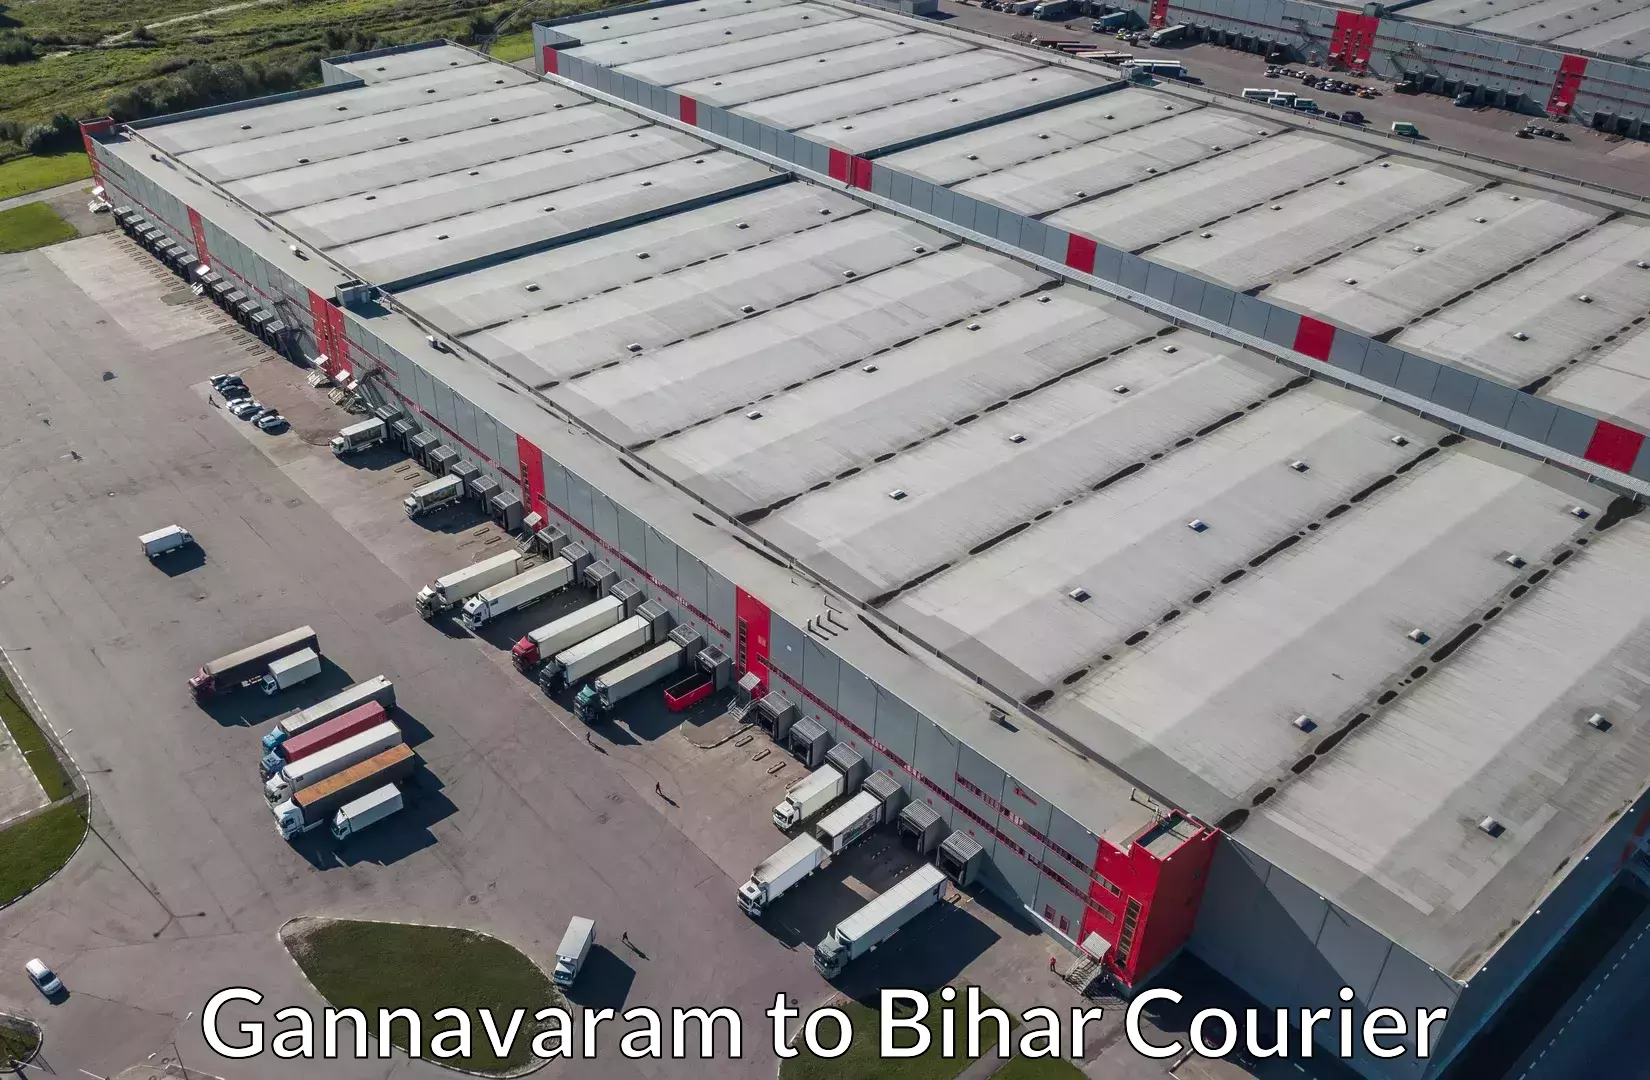 Household moving companies Gannavaram to Khizarsarai